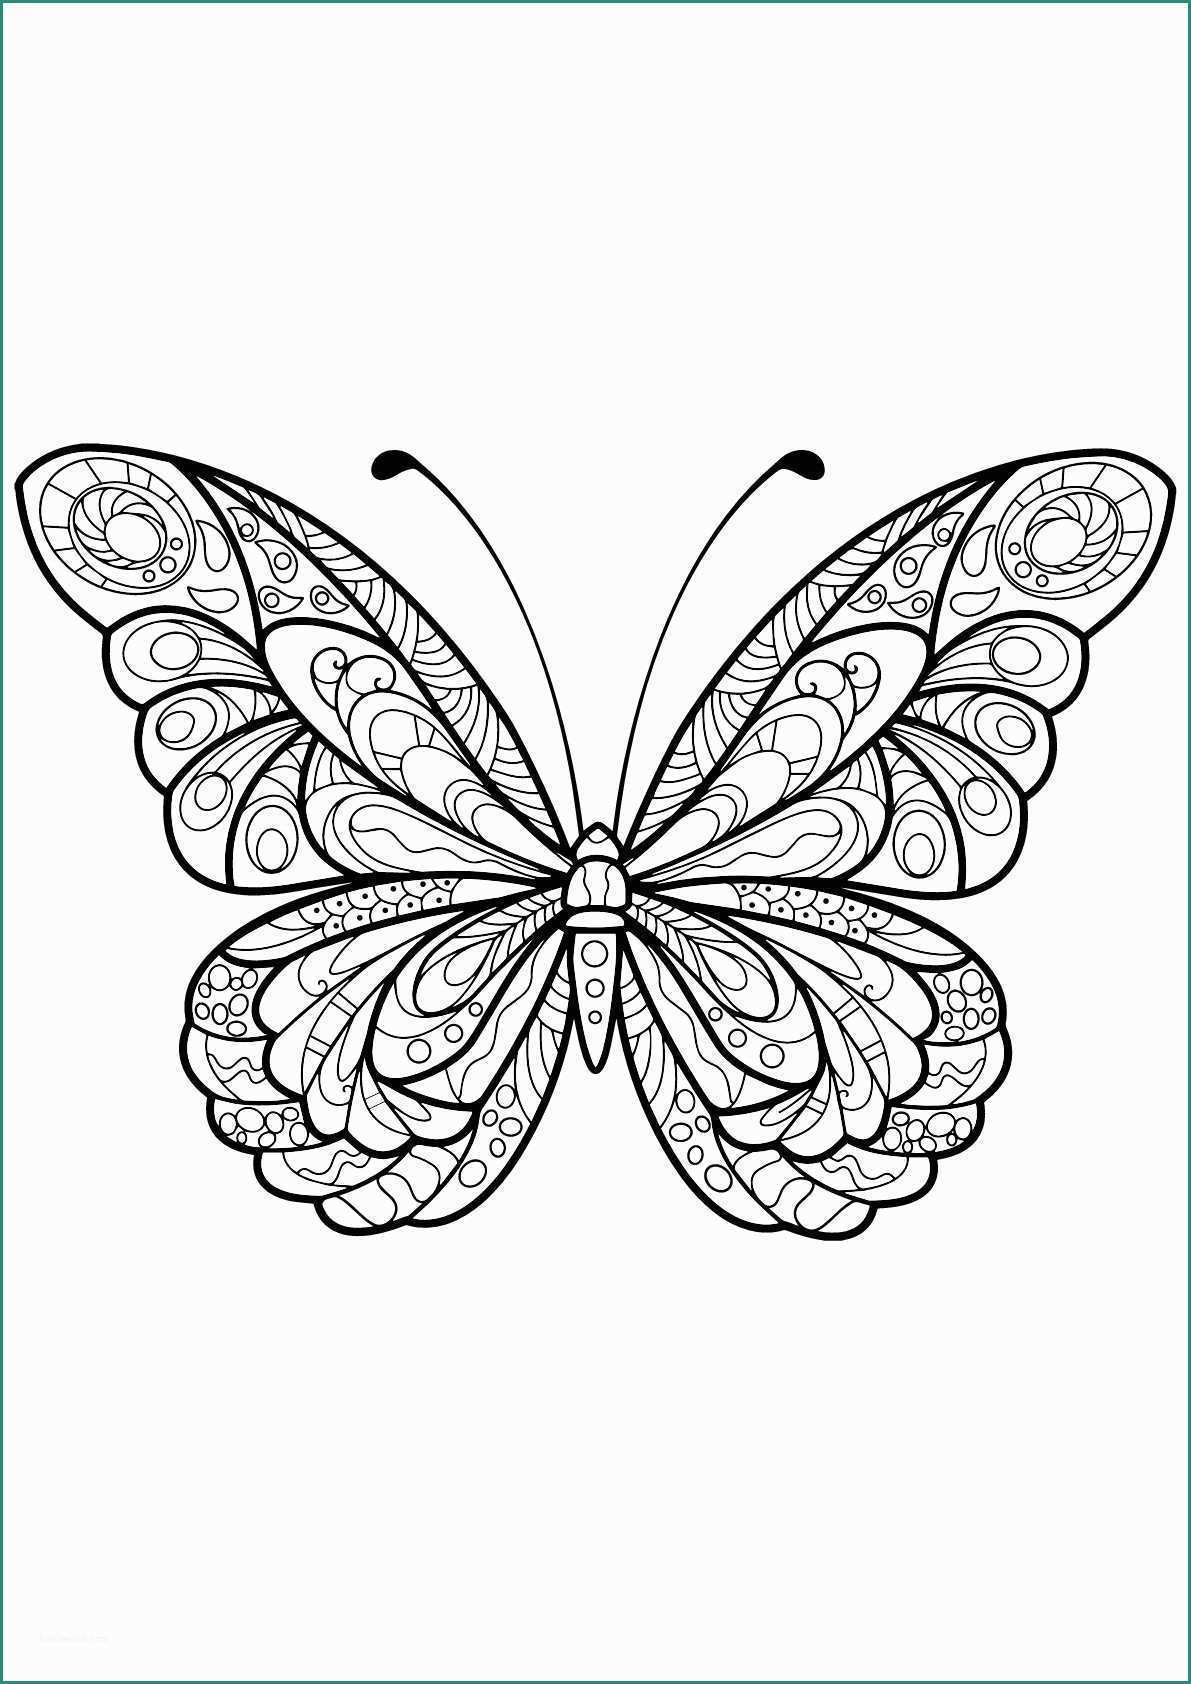 Immagini Di Farfalle Da Disegnare E Disegni Insetti Da Colorare Per Bambini Images